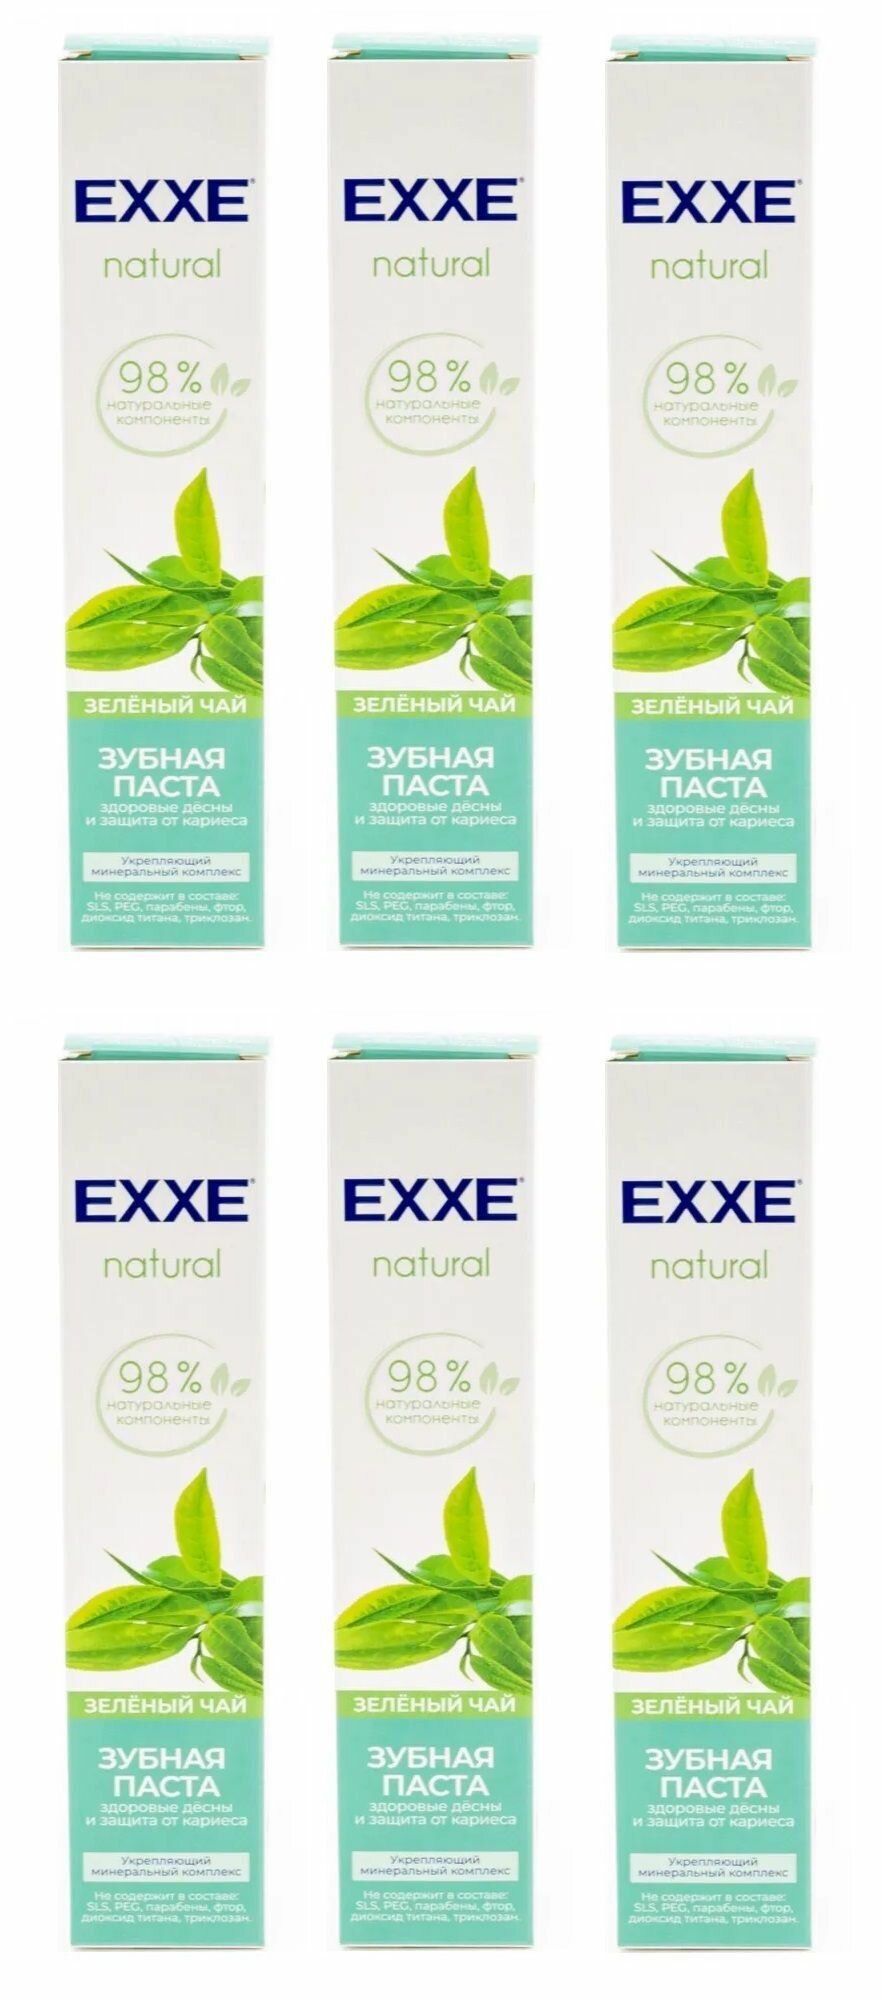 EXXE Зубная паста natural "Зелёный чай", 75 мл, 6 шт